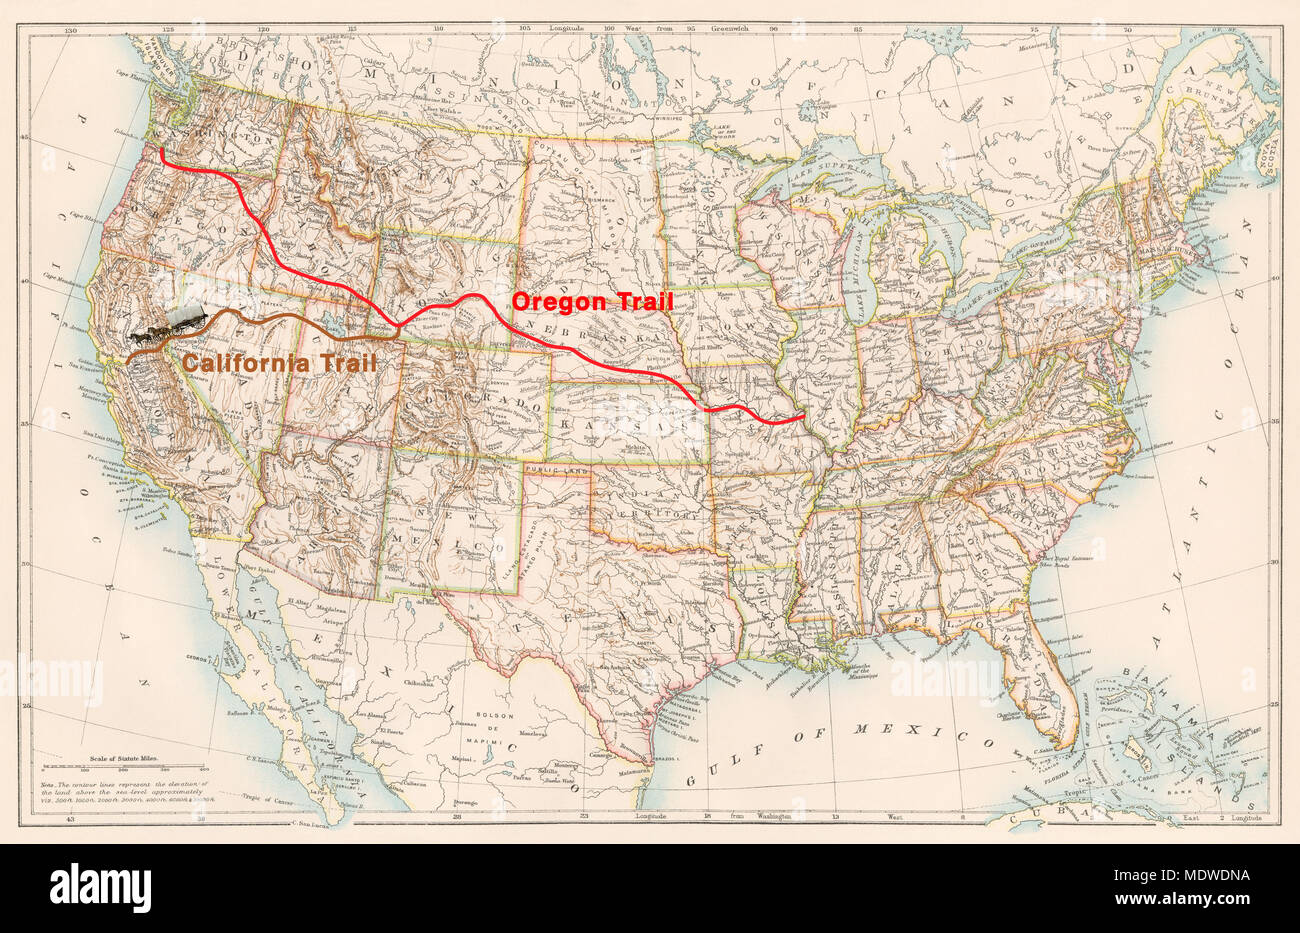 Oregon Trail und California Trail Routen auf einer 1870er Karte der USA. Digitale Illustration Stockfoto